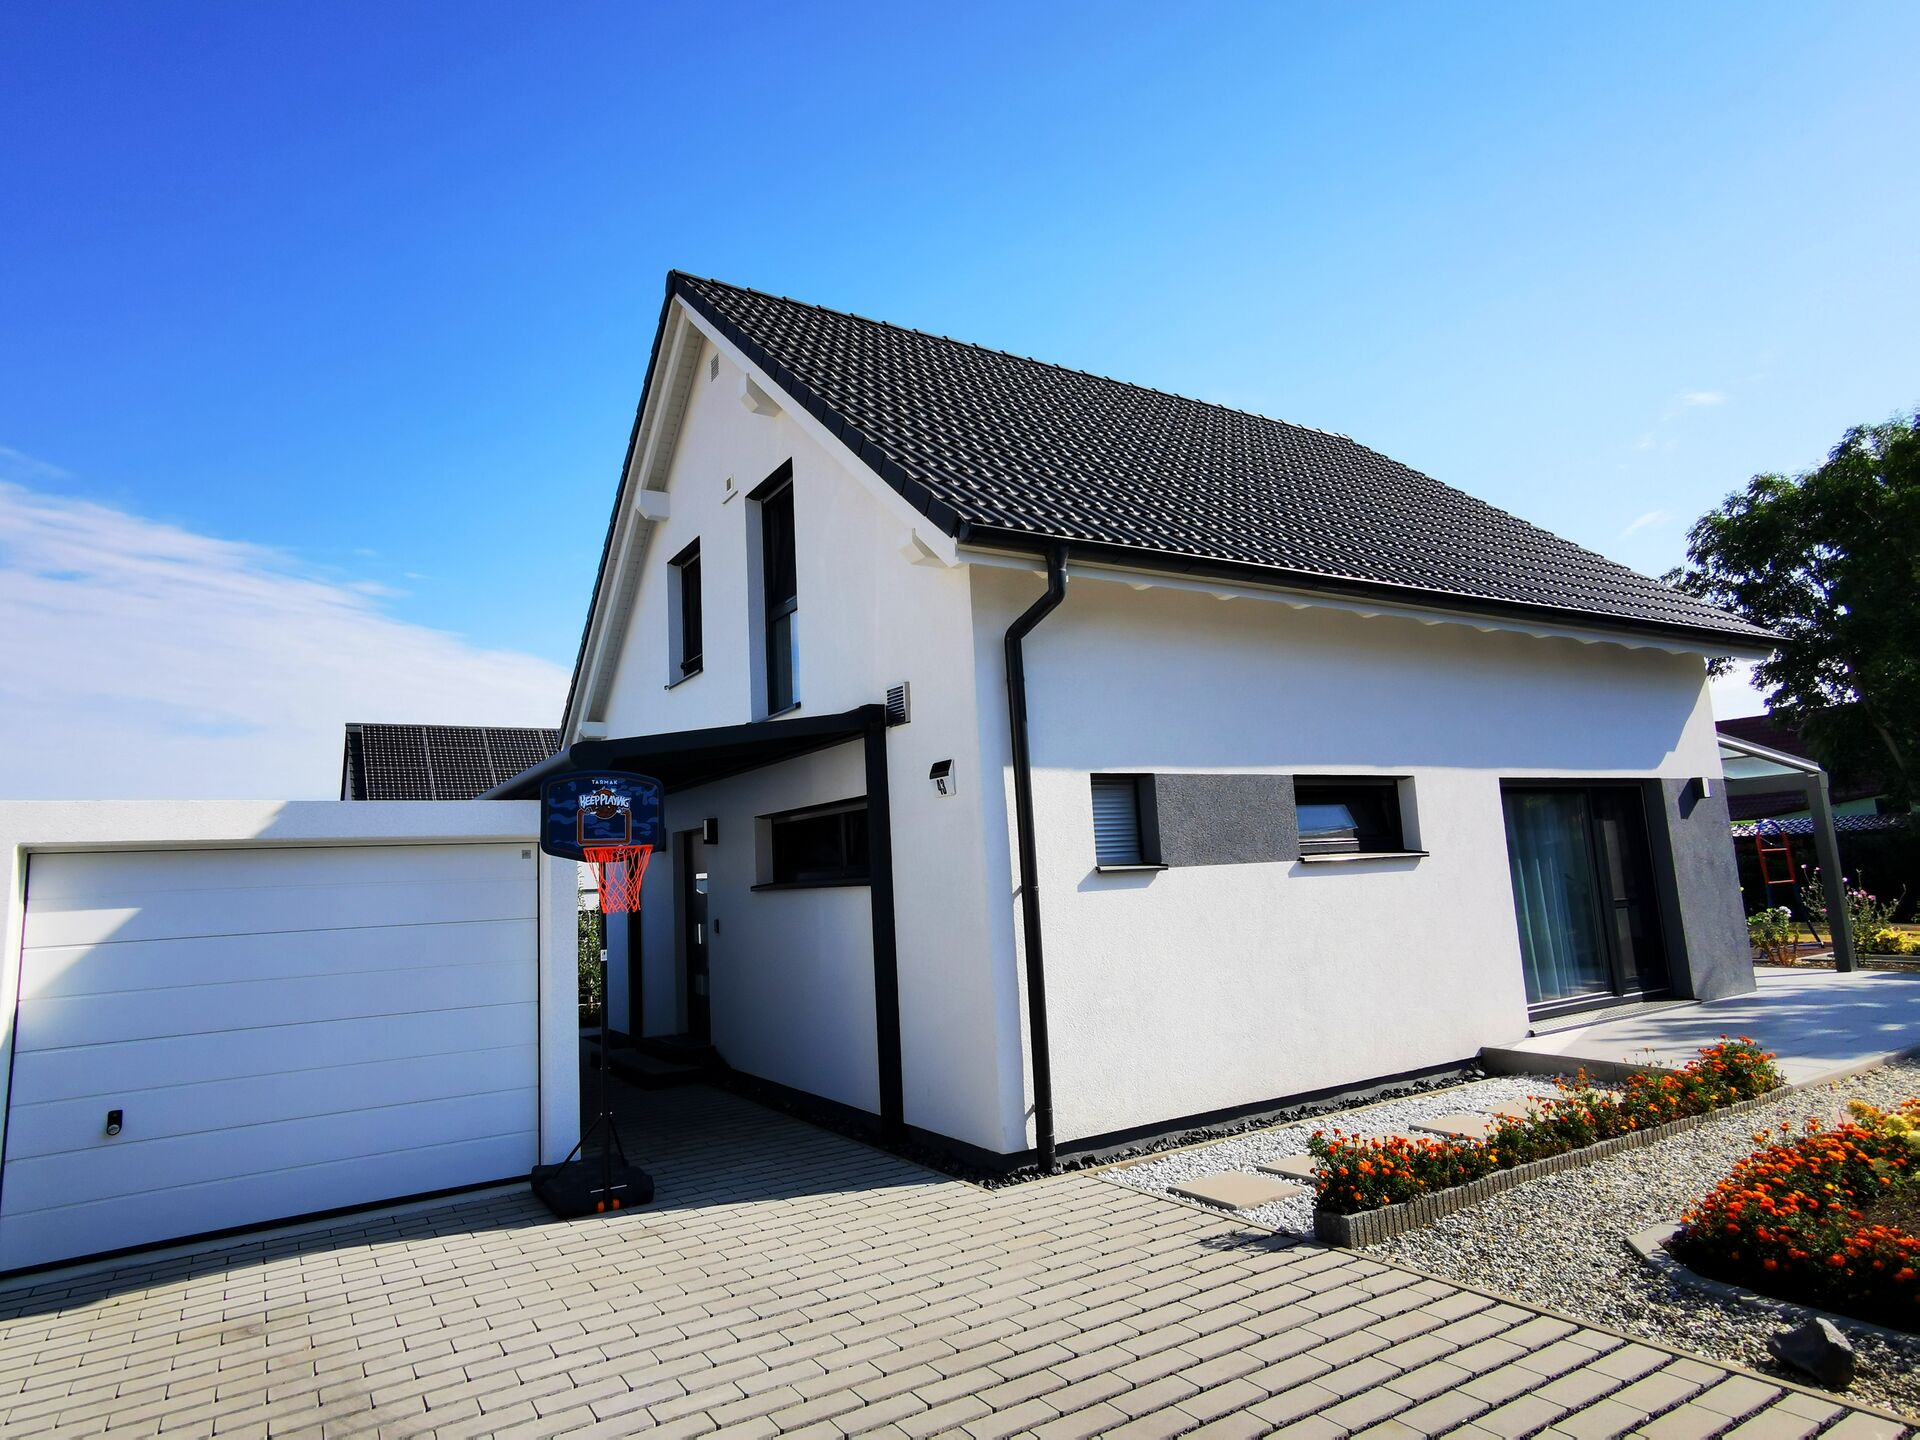 Immobilien zum Kauf: von EFH bis Mehrfamilienhaus